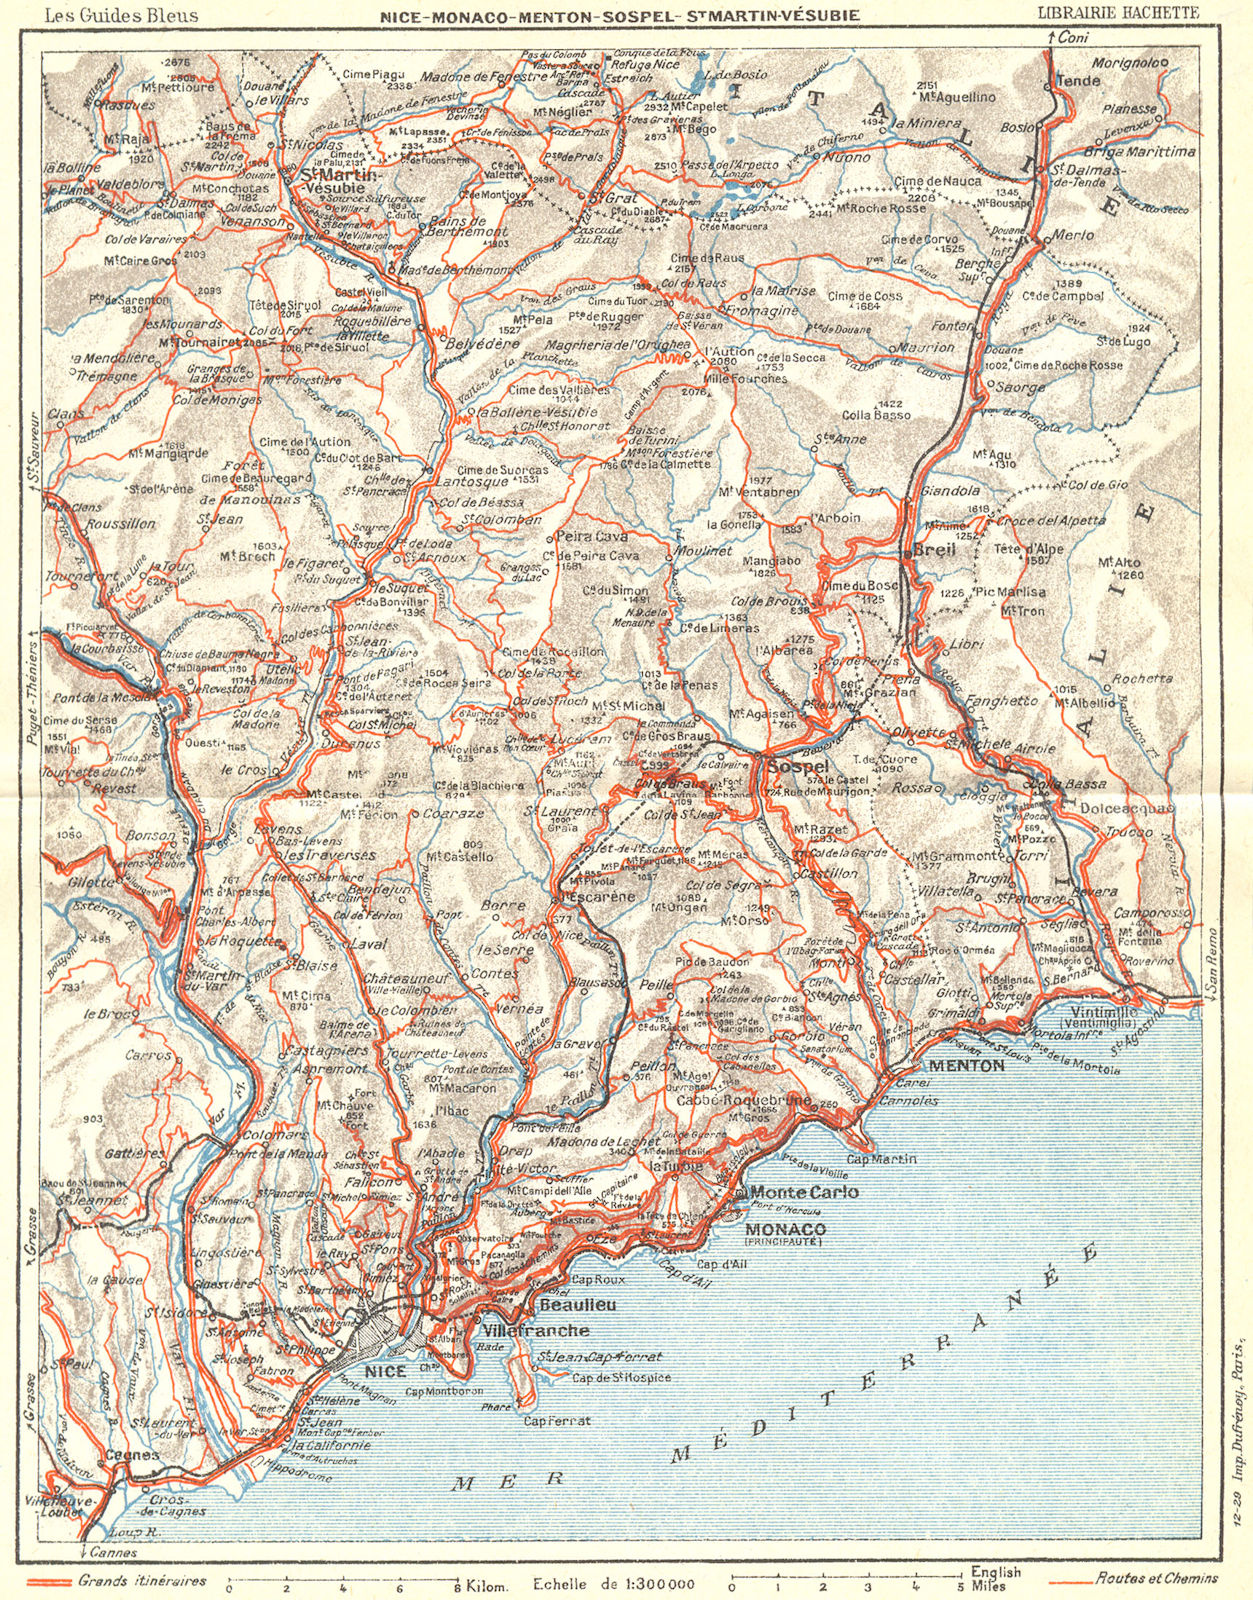 COTE D'AZUR. Nice Monaco Menton Vesubie 1926 old vintage map plan chart